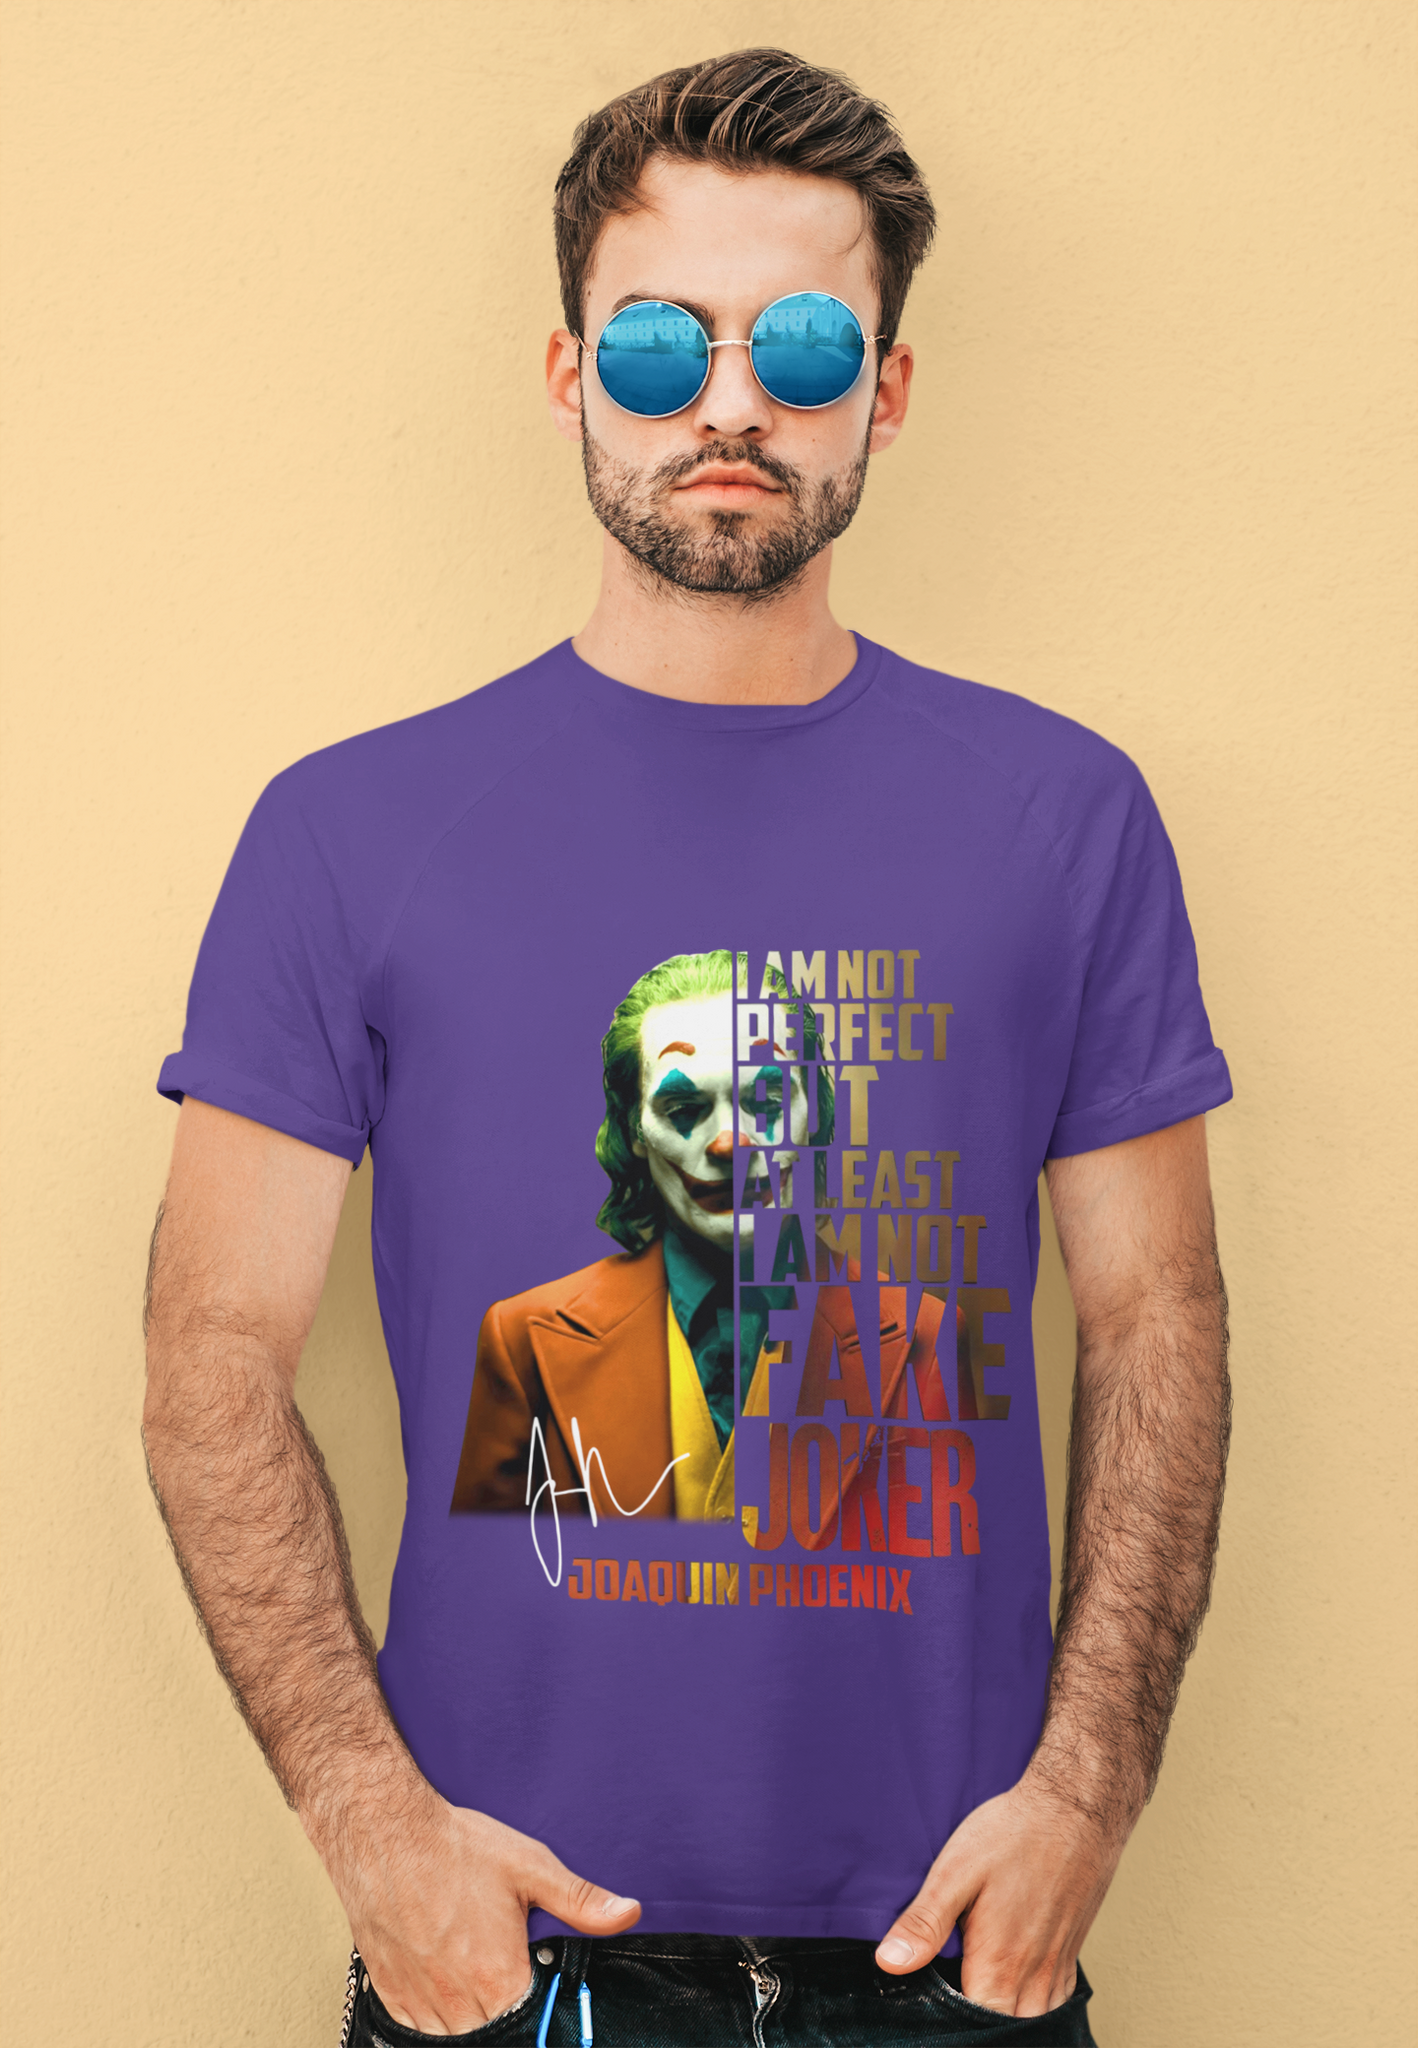 Joker T Shirt, Joker The Comedian Tshirt, Im Not Perfect But At Least I Am Not Fake Joker Shirt, Halloween Gifts